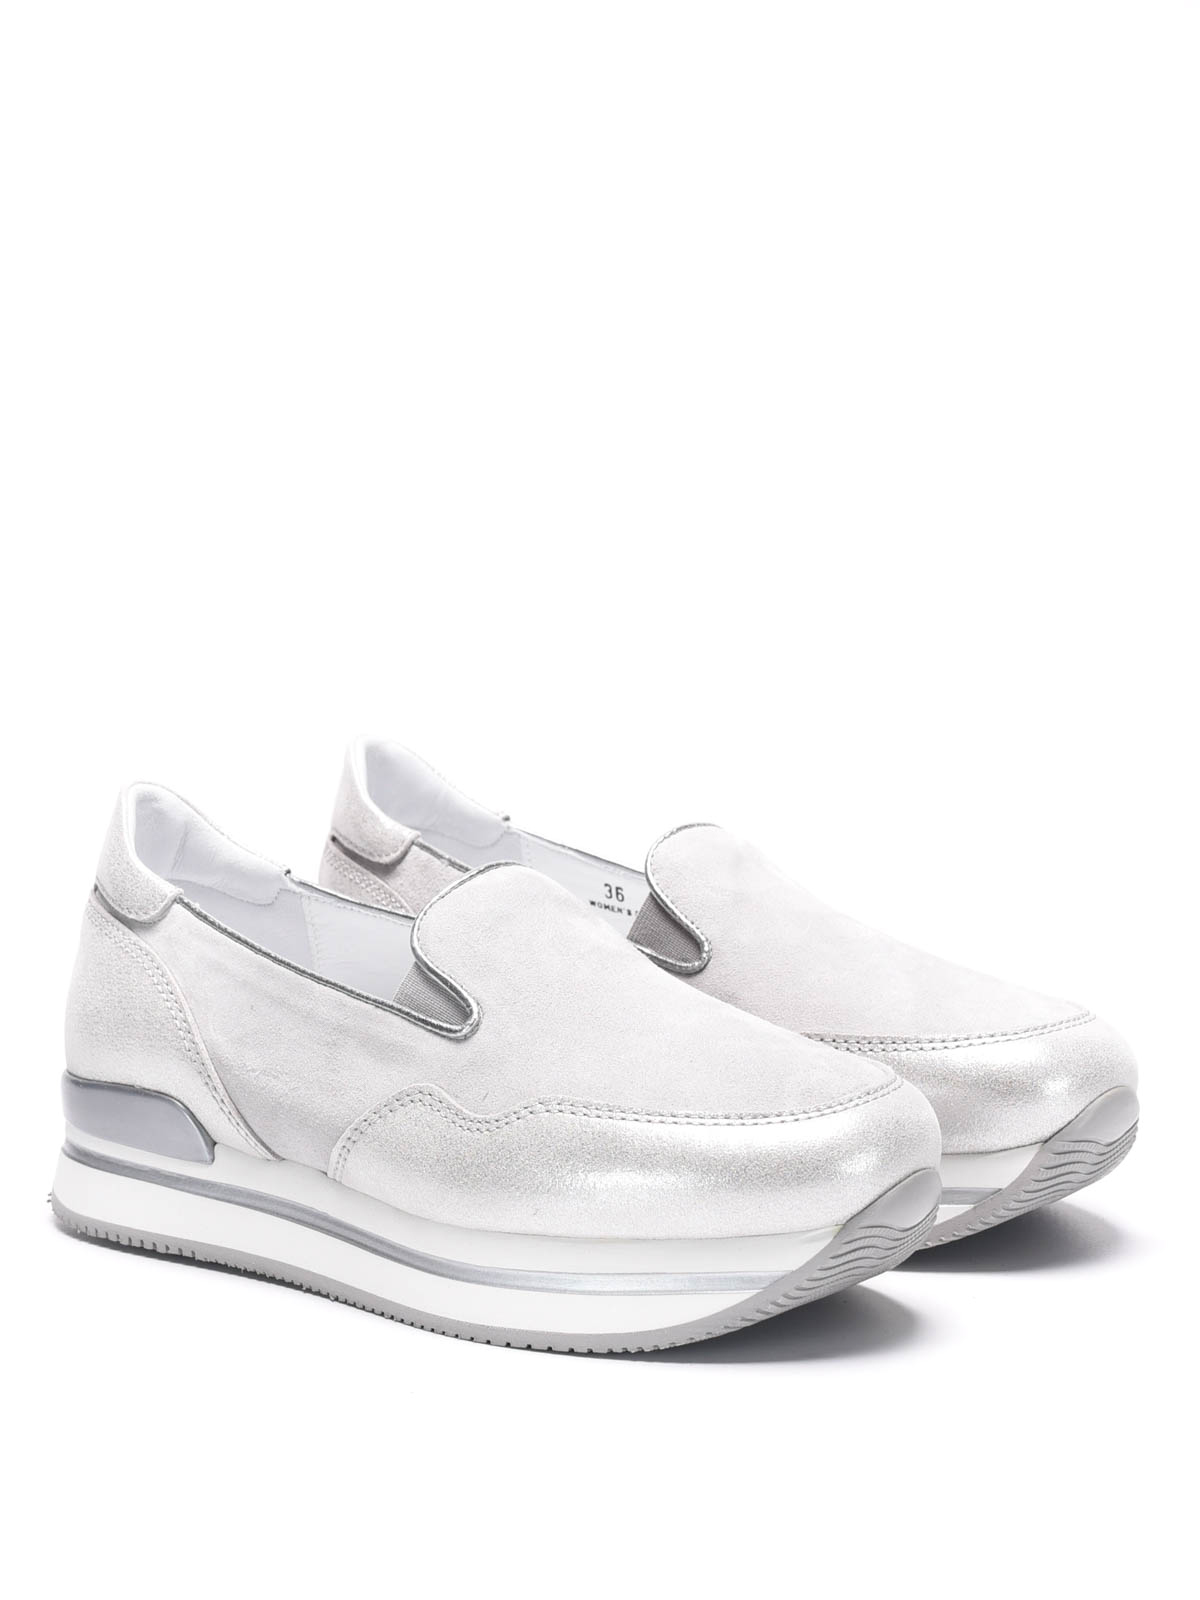 Hogan - Slip-on H222 - sneakers - HXW2220T67184Y109A | iKRIX shop online